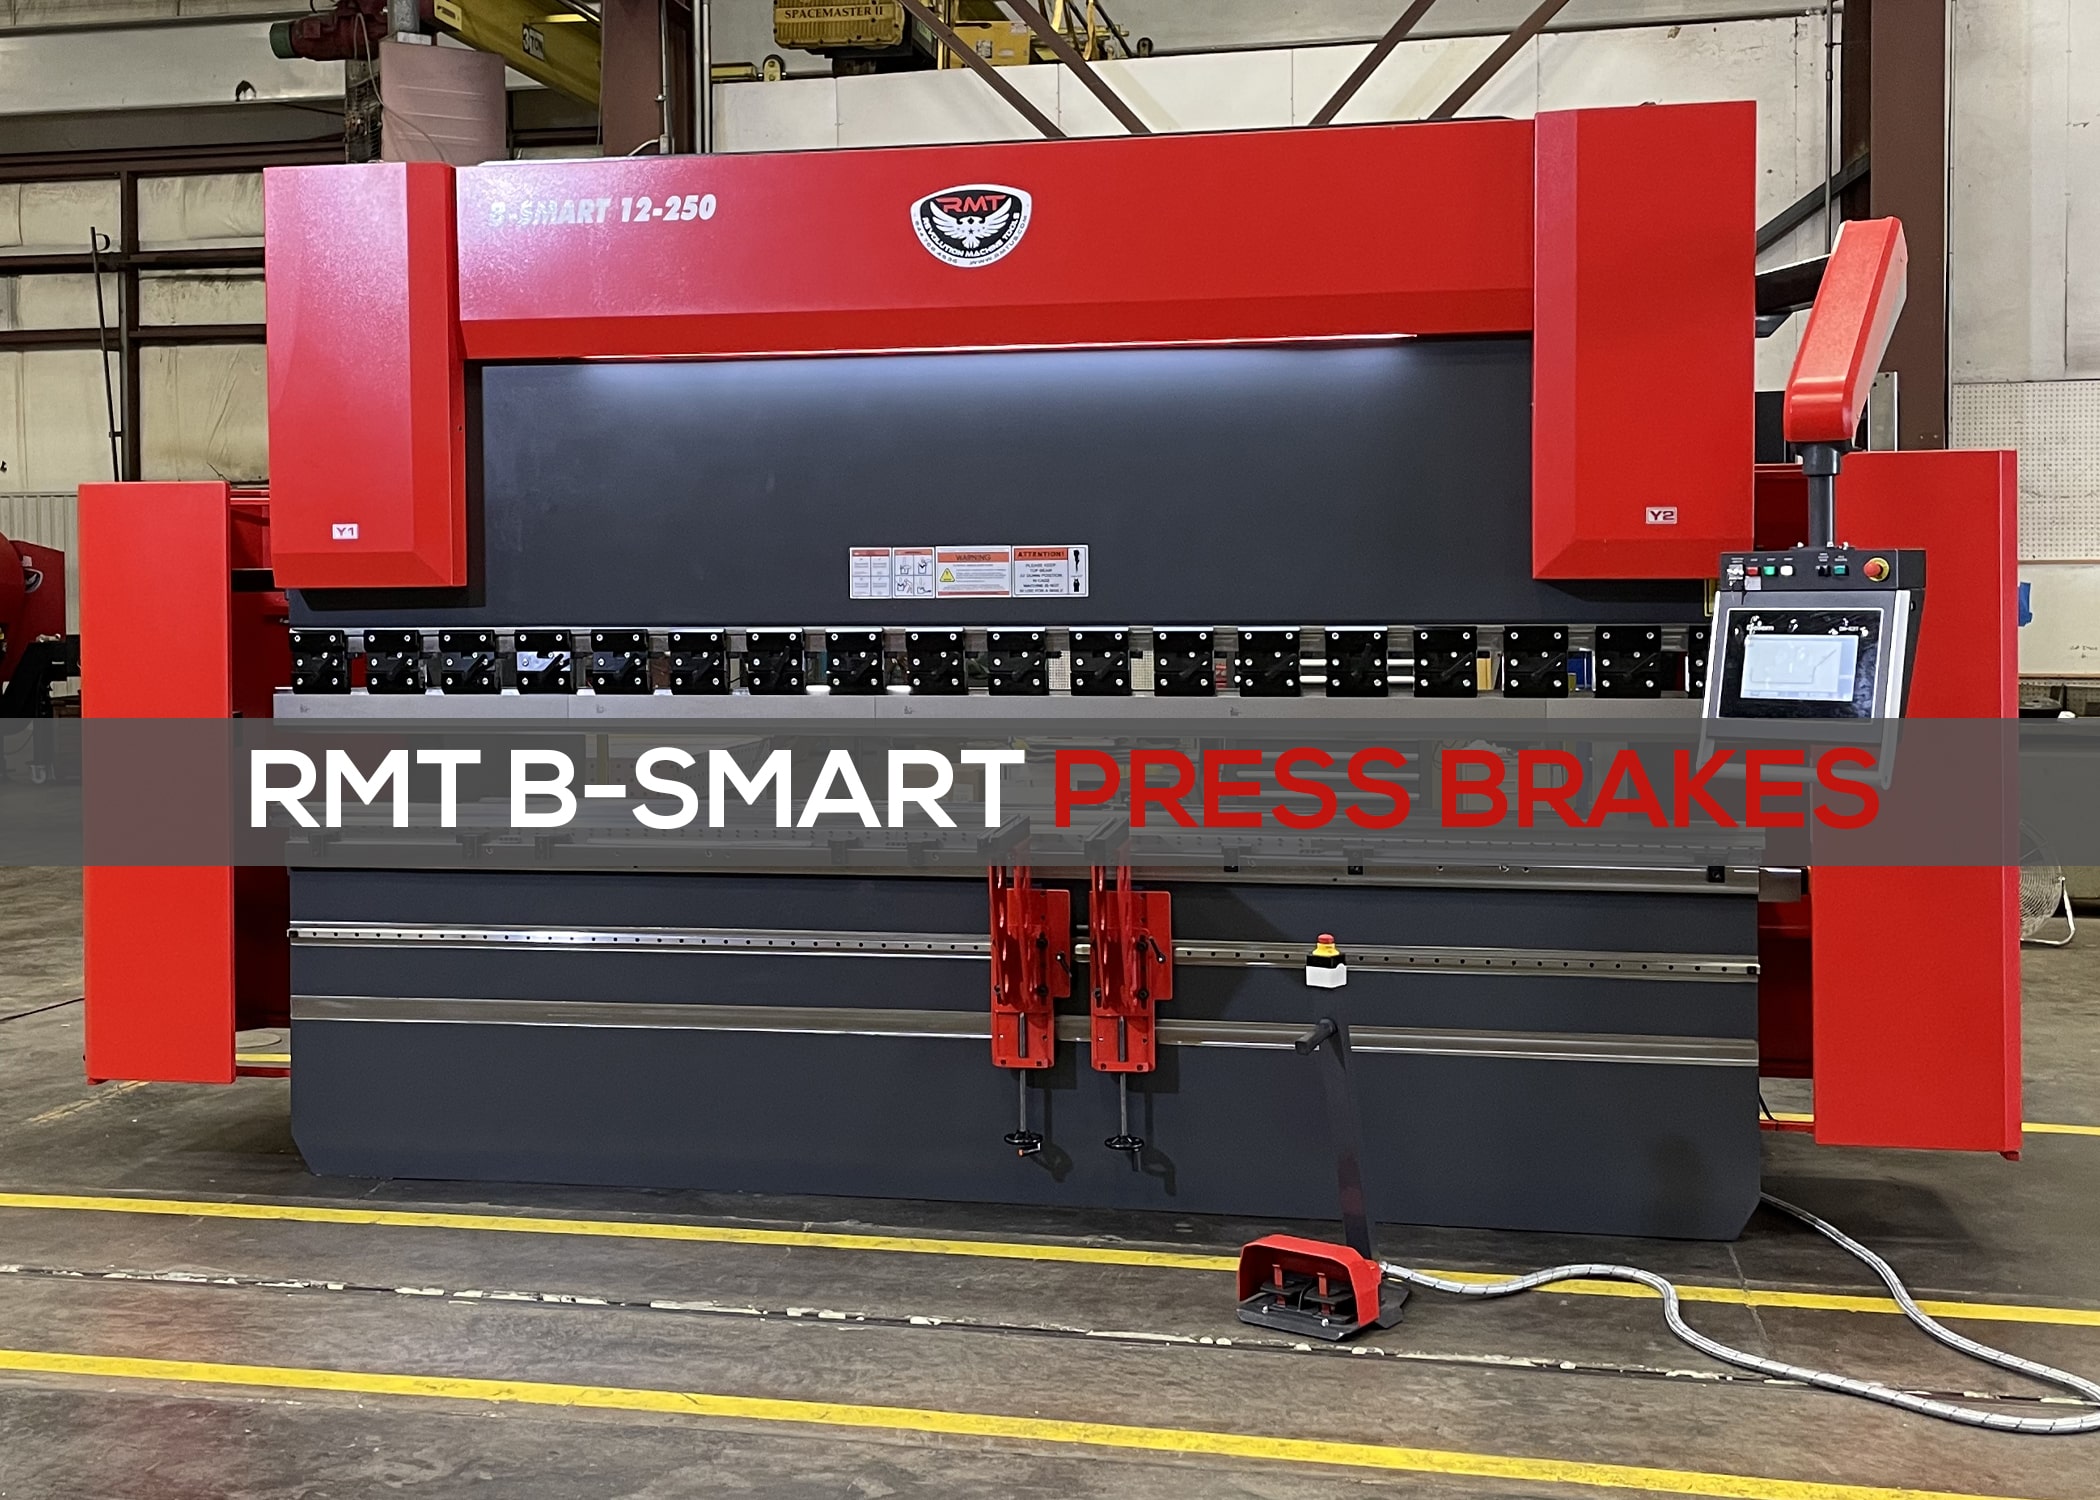 Spotlight on RMT B-SMART Press Brakes